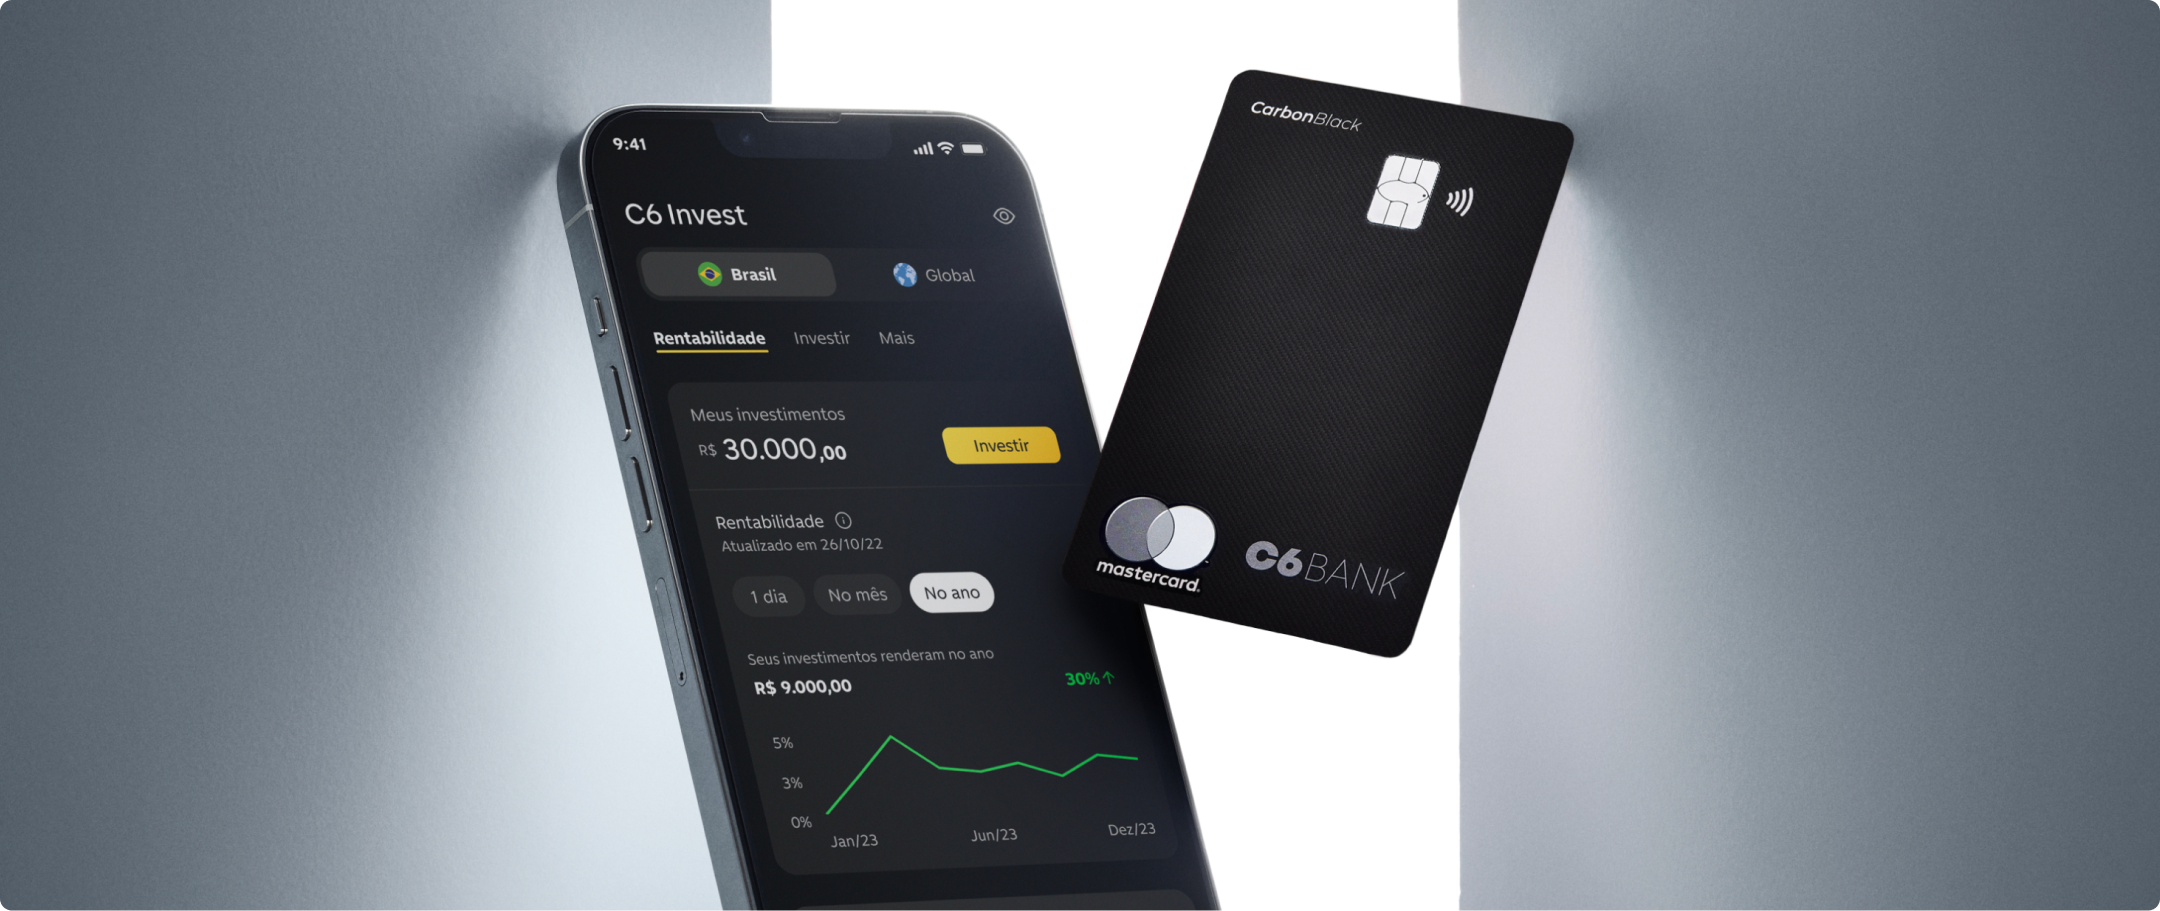 Foto de celular com a tela de investimentos do aplicativo do C6 Bank aberta e cartão preto do C6 Bank ao lado, flutuando.